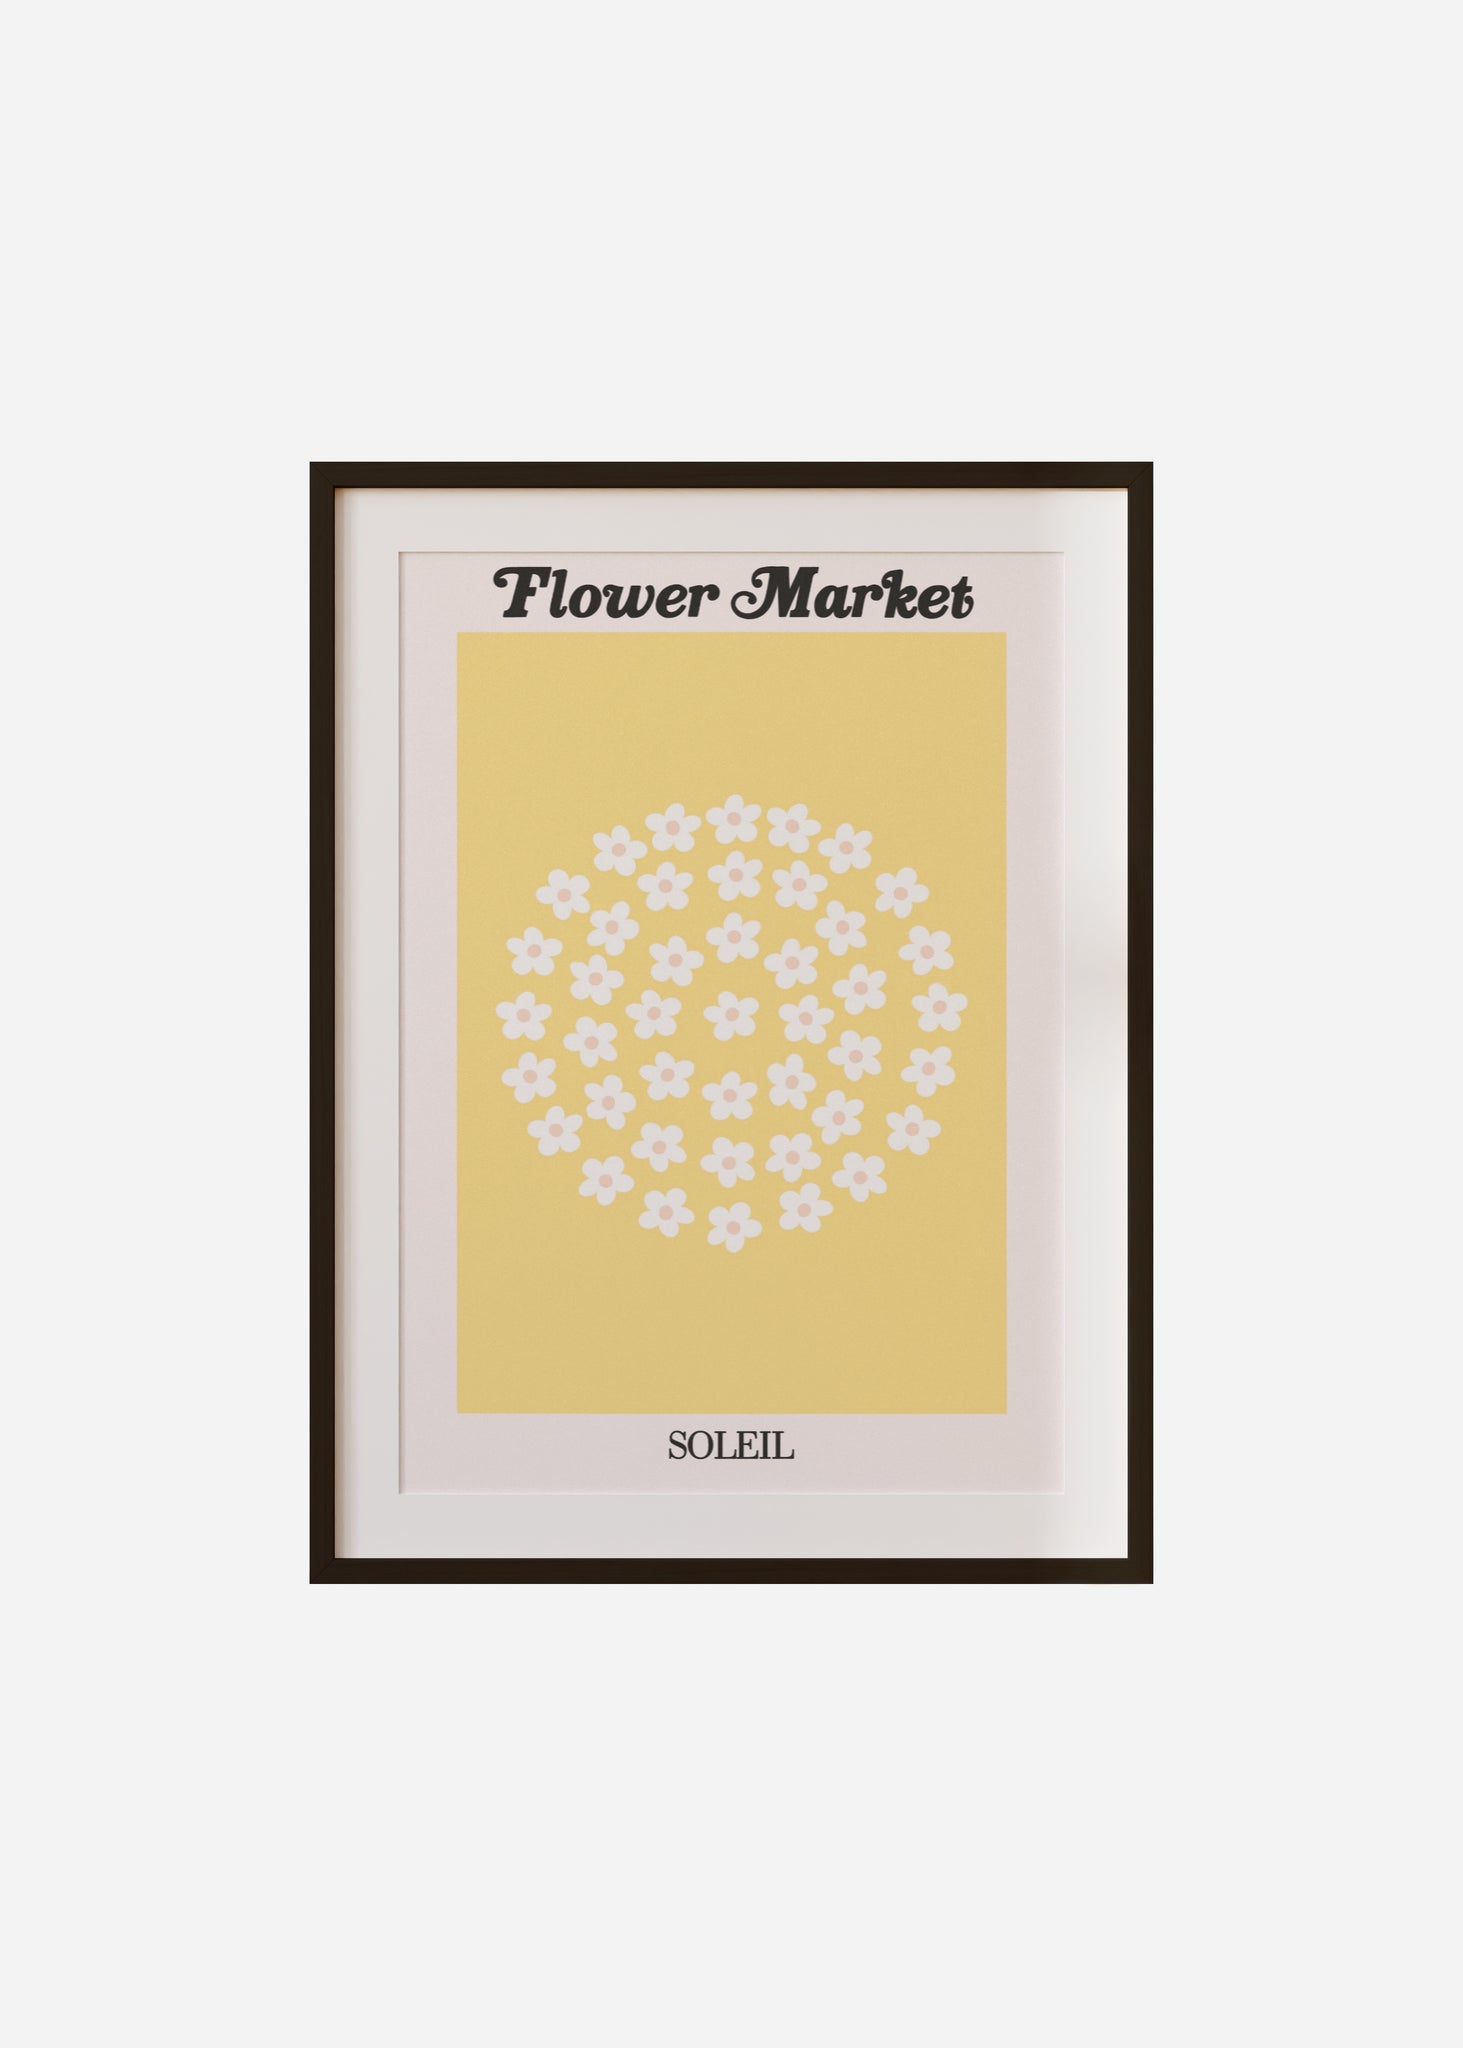 flower market / soleil Framed & Mounted Print